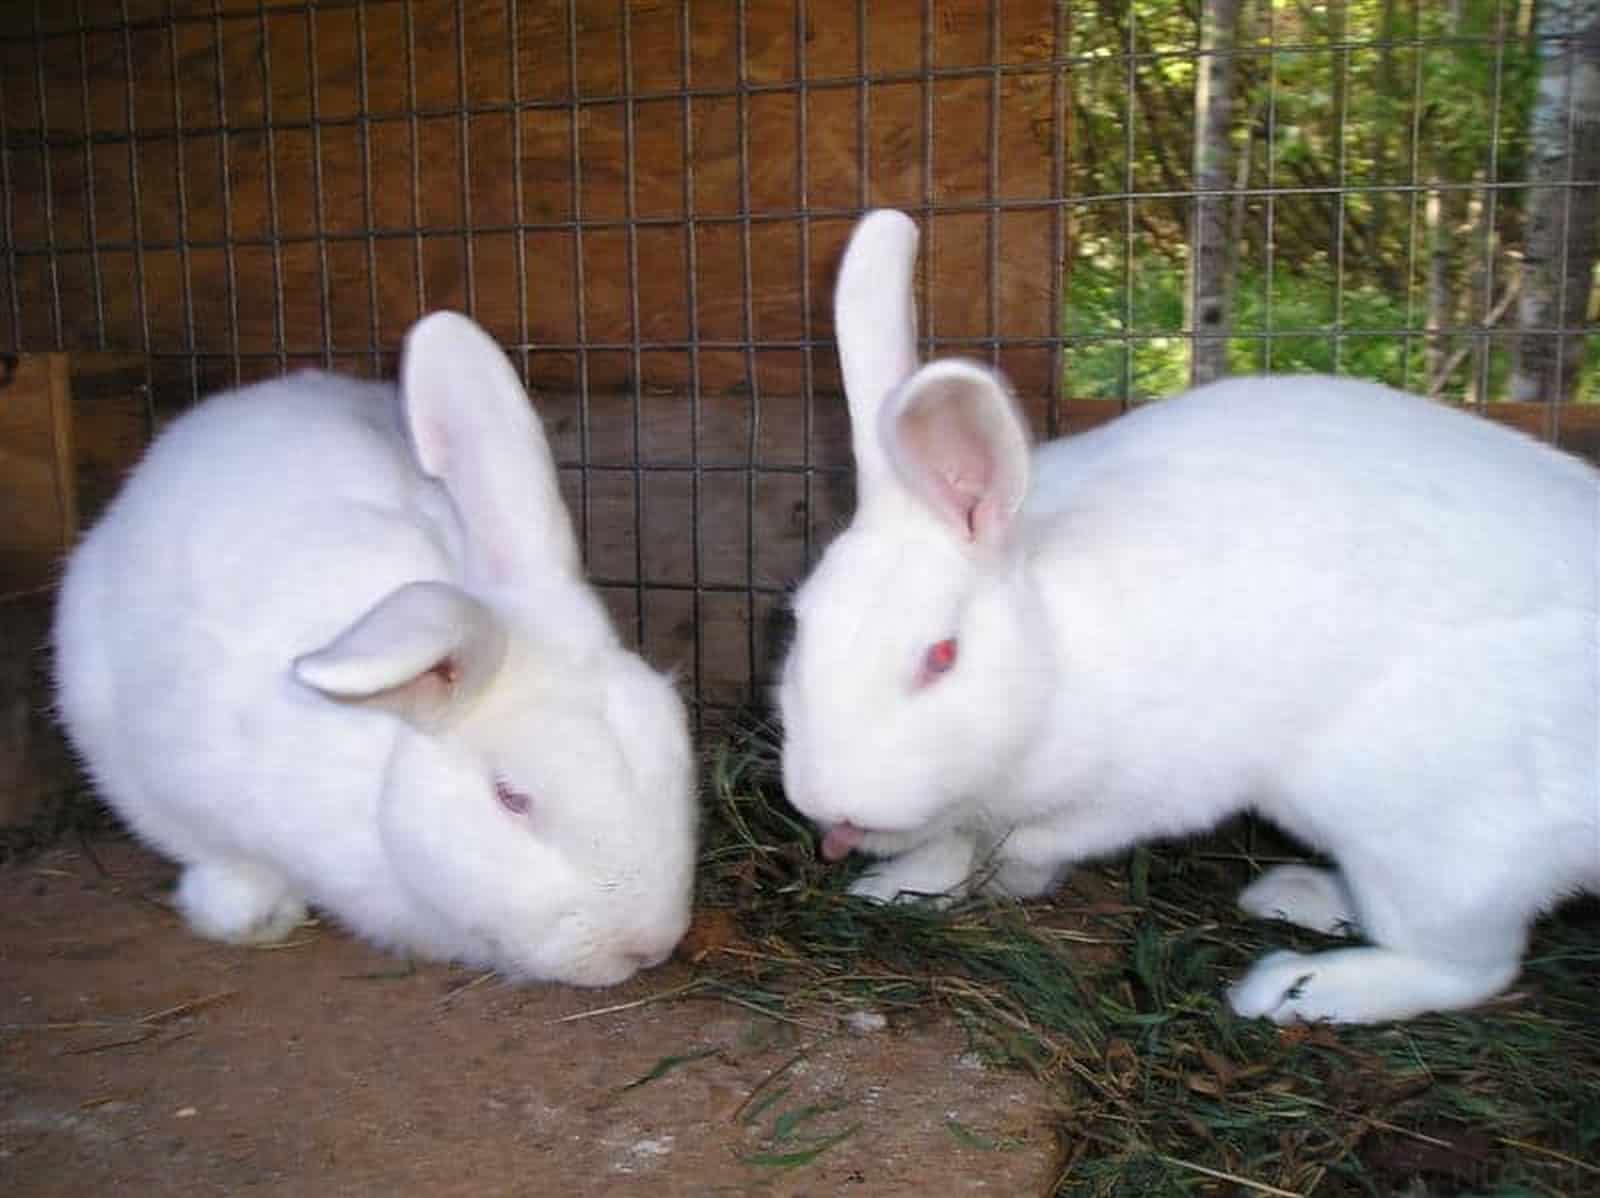 two Florida white rabbits